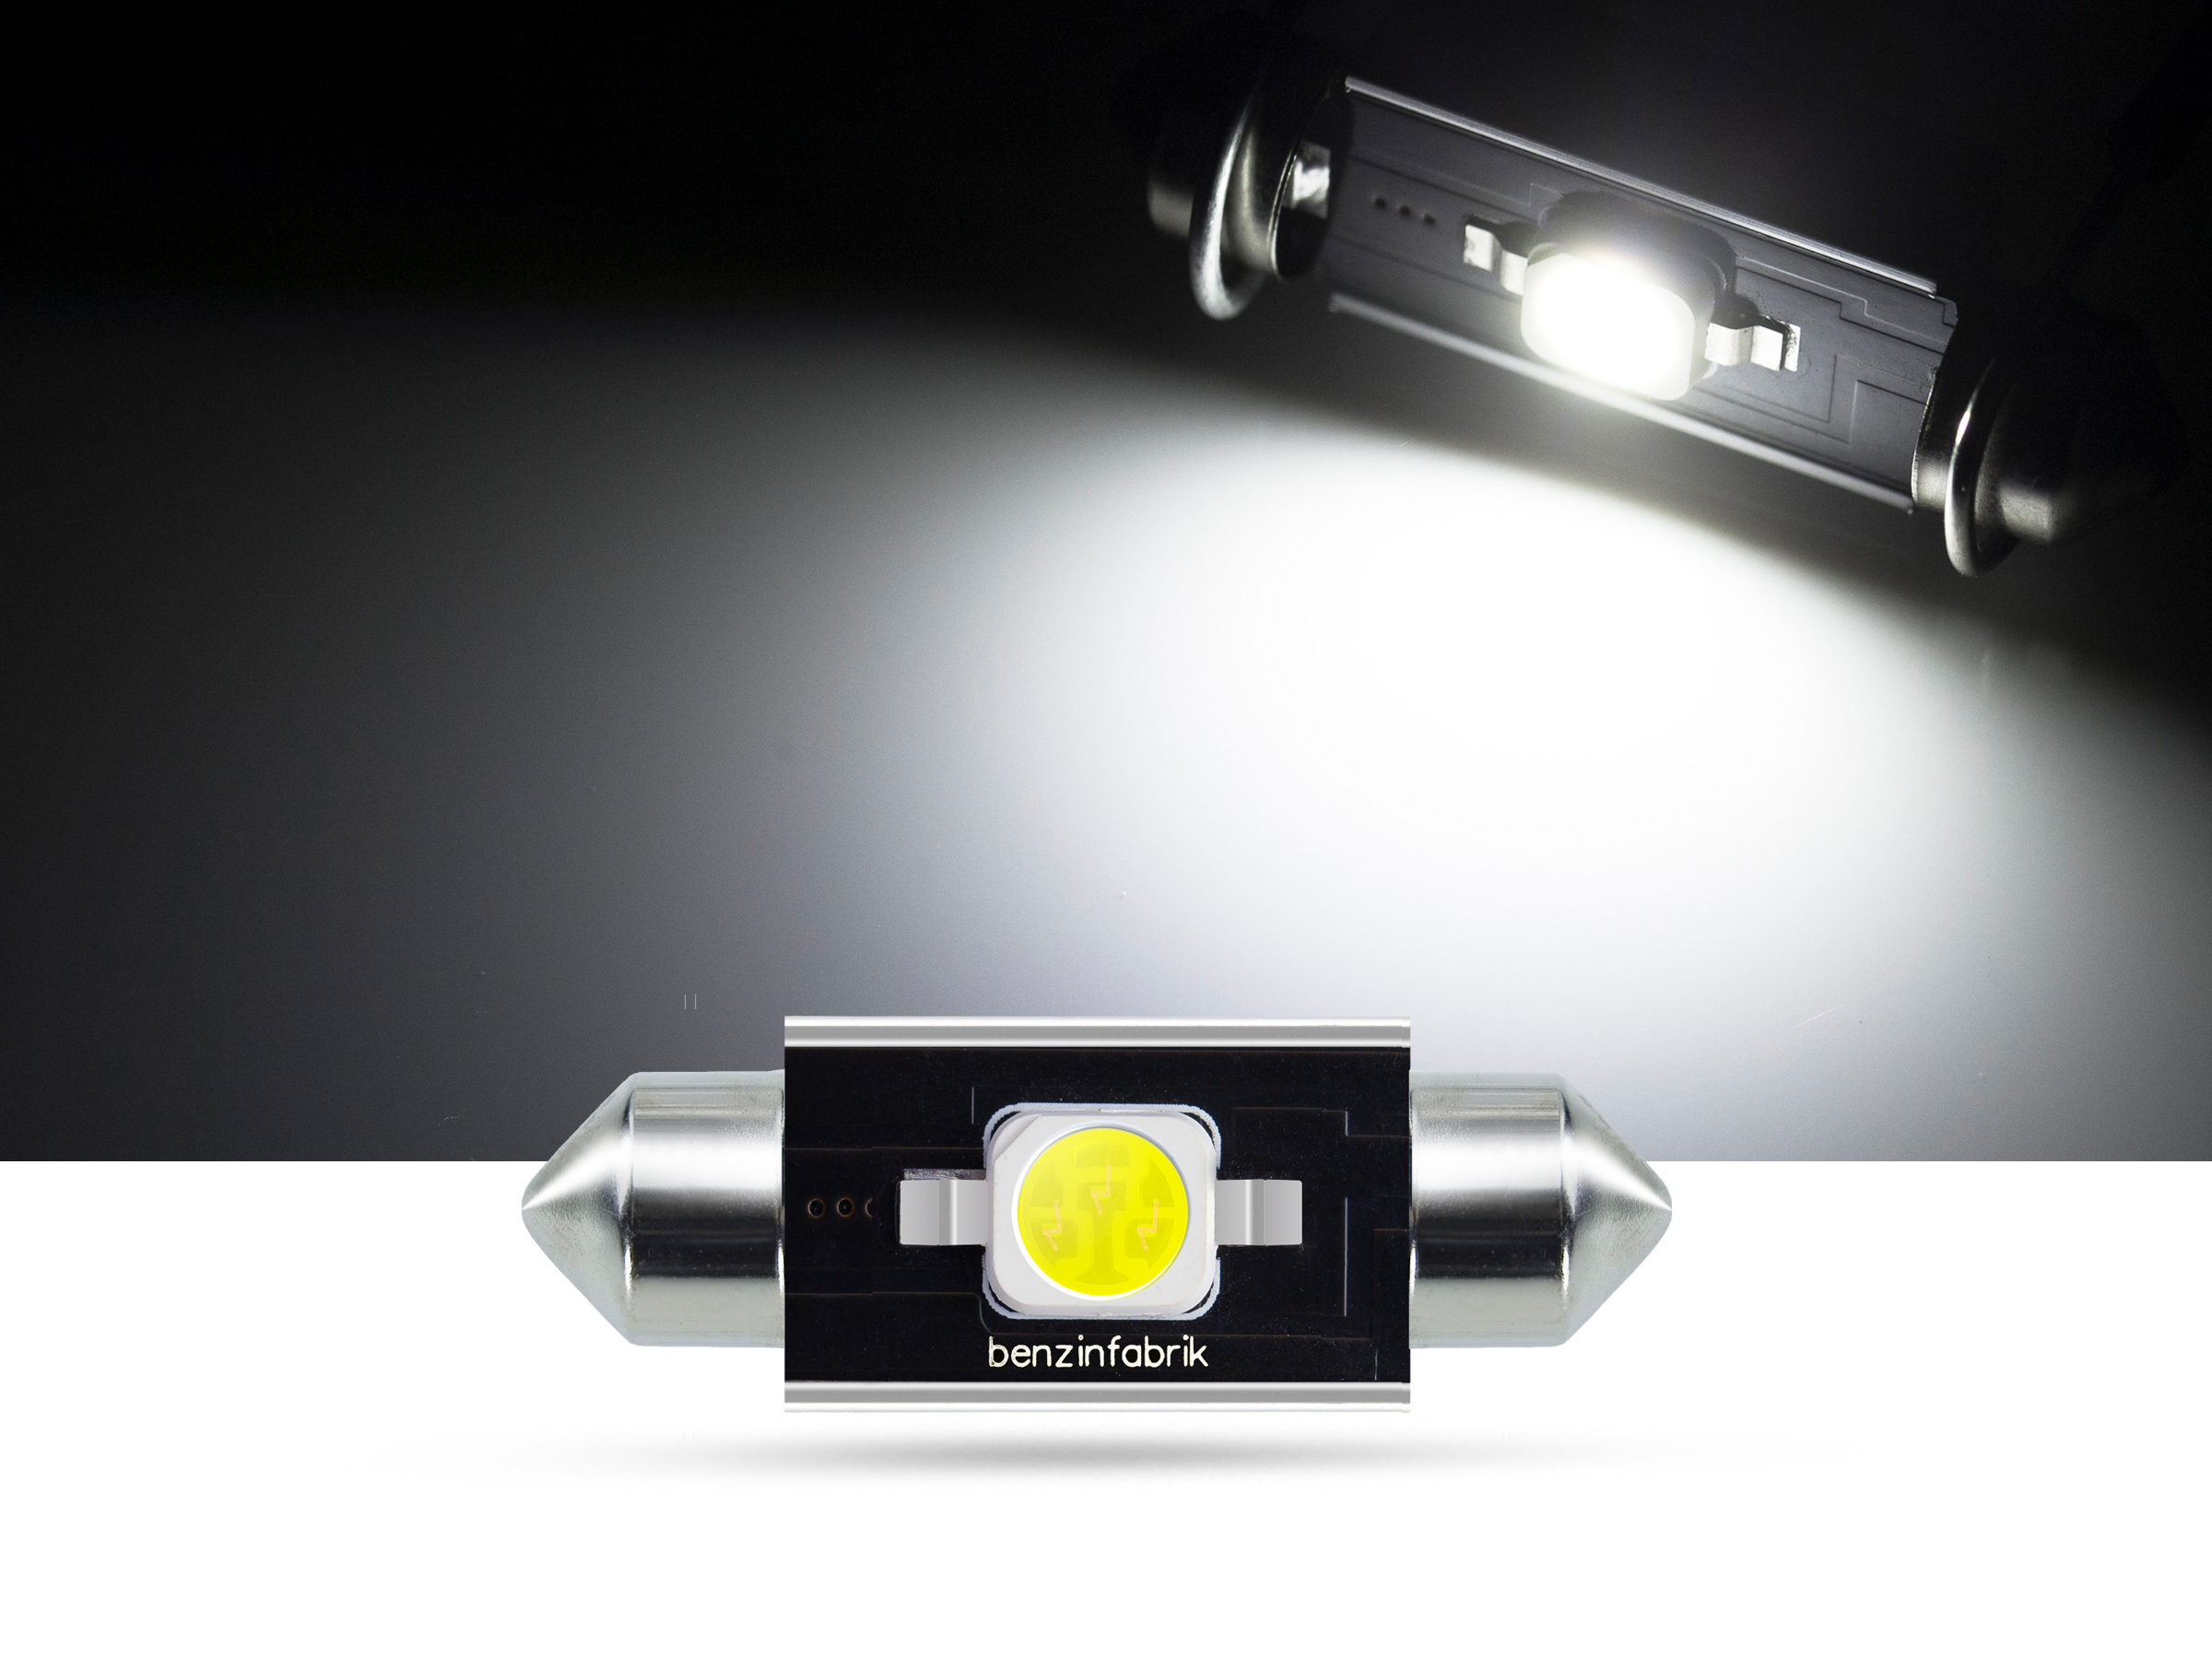 36mm 2 Watt SMD LED Soffitte Innenraumlicht, CAN-bus, weiss, SMD LED  Soffitten, weiss, LED Soffitten, Auto Innenraumlicht, LED Auto  Innenraumbeleuchtung